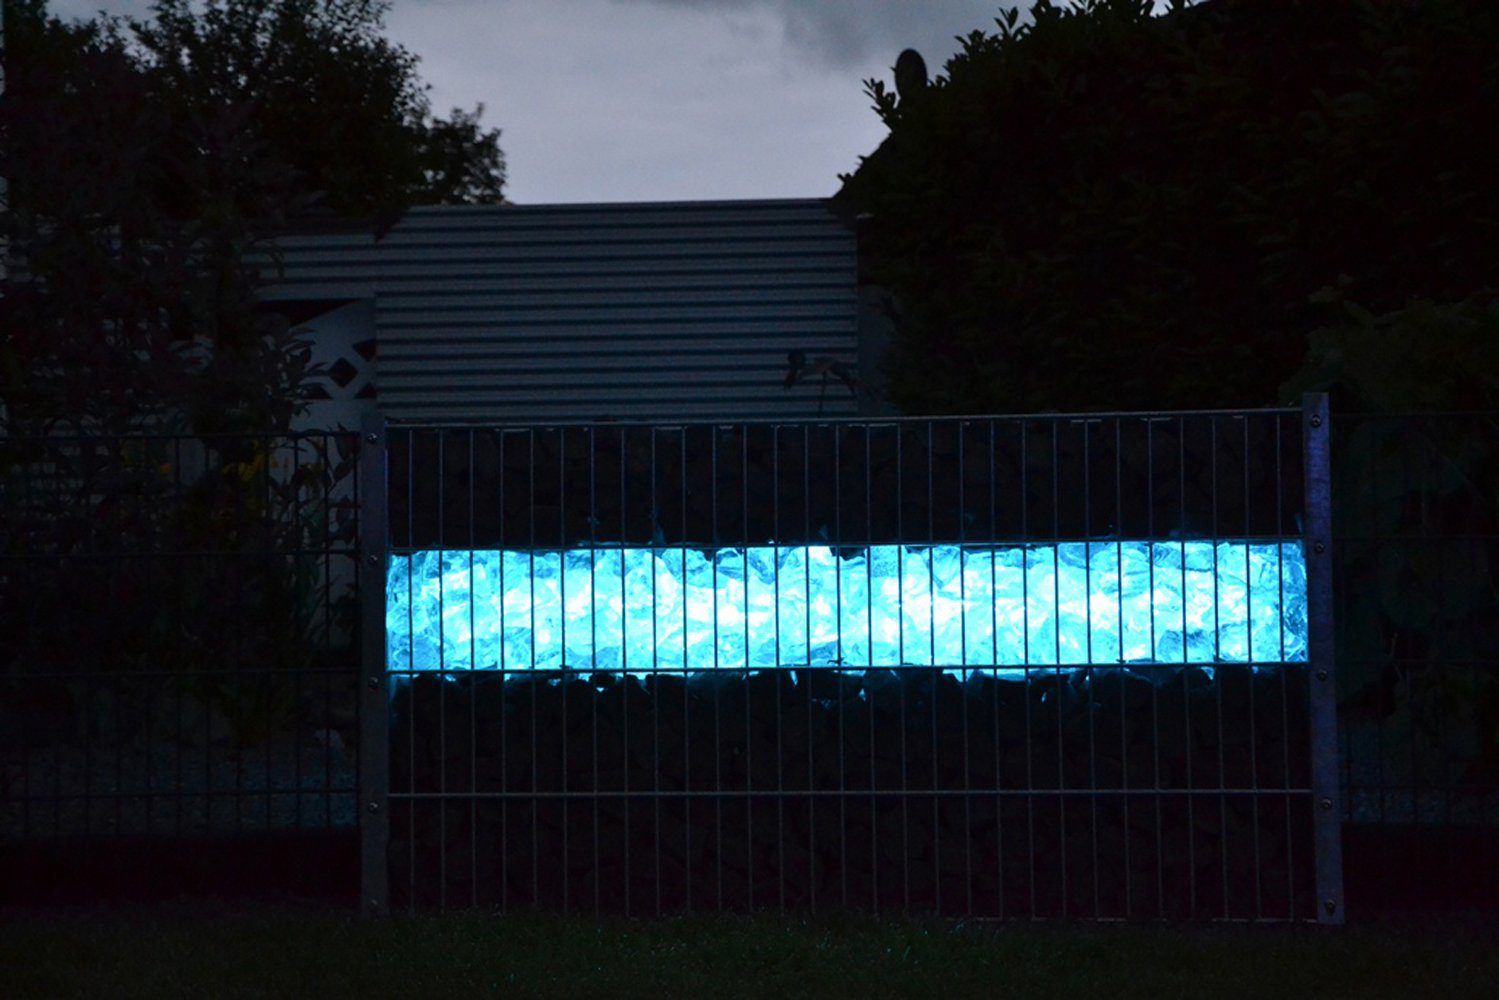 XENON Gabionen Blau, mit 153cm Röhr Außen-Wandleuchte 1634 T8, LED Xenon Röhre LED Kunststoff-Röhre LED